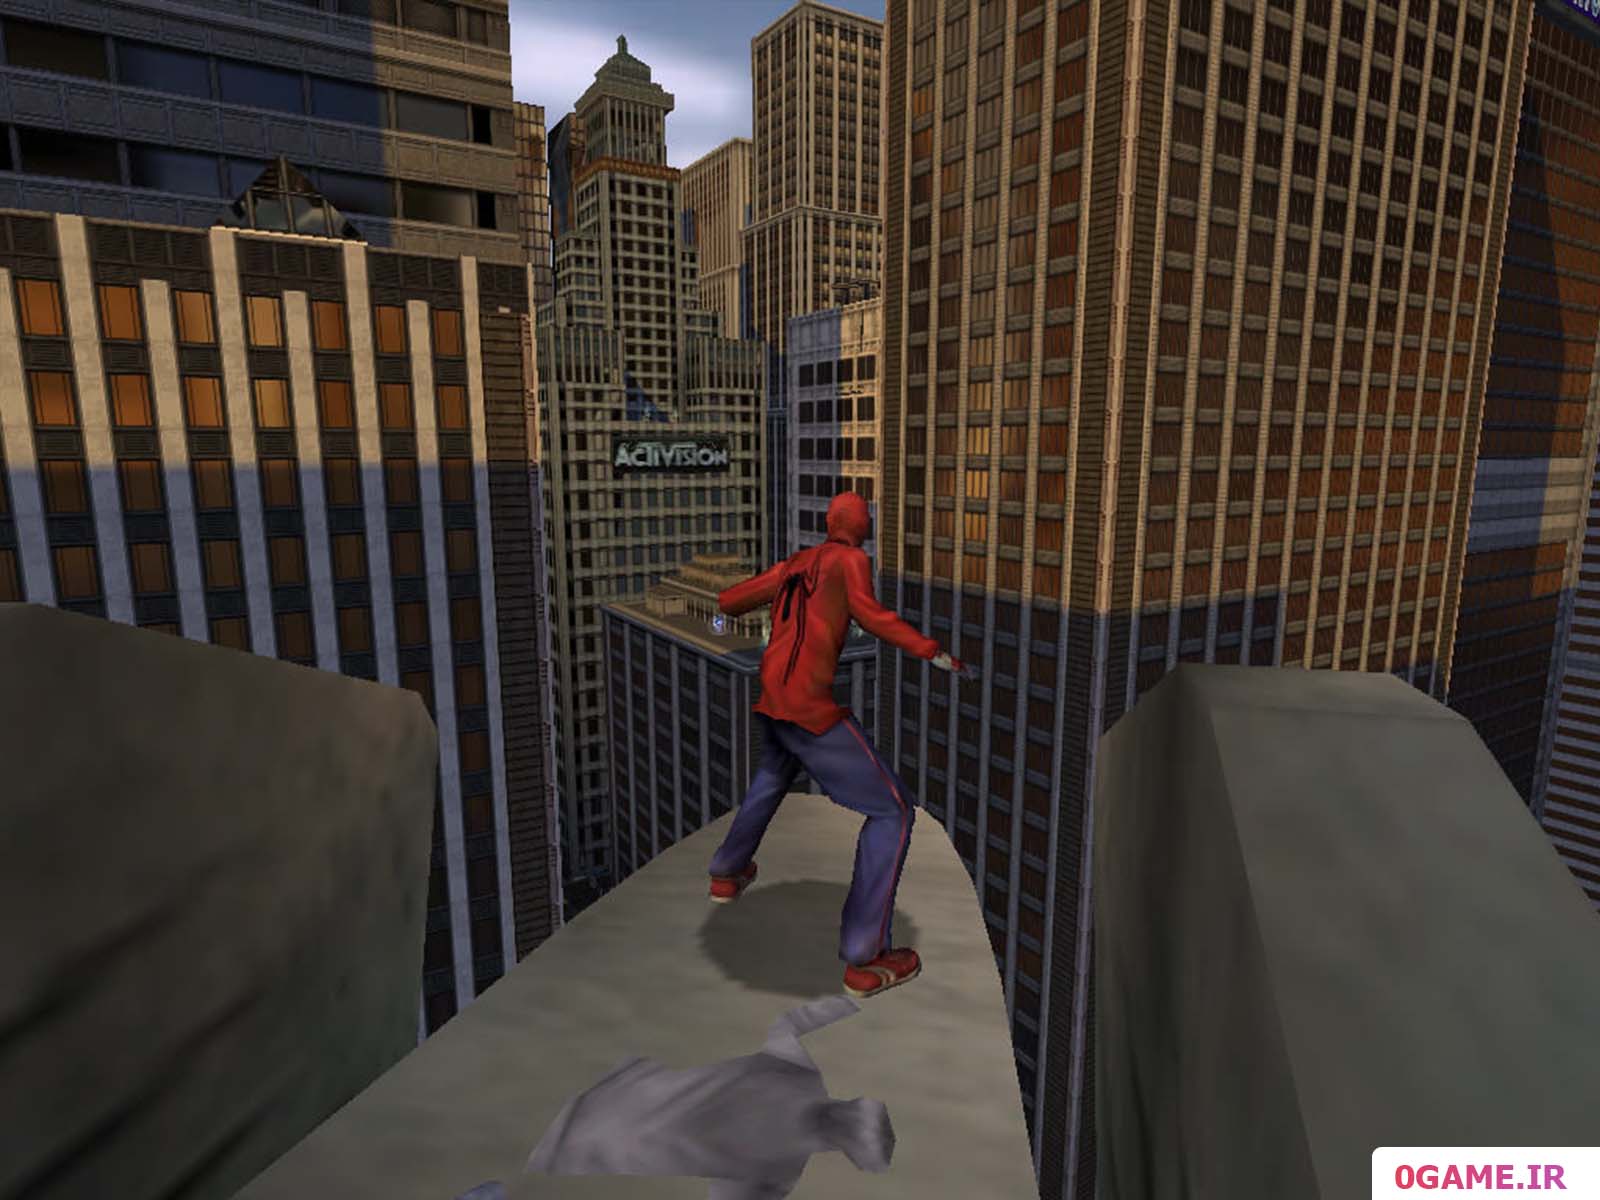  دانلود بازی مرد عنکبوتی 2002 (Spider Man: The Movie) نسخه کامل برای کامپیوتر